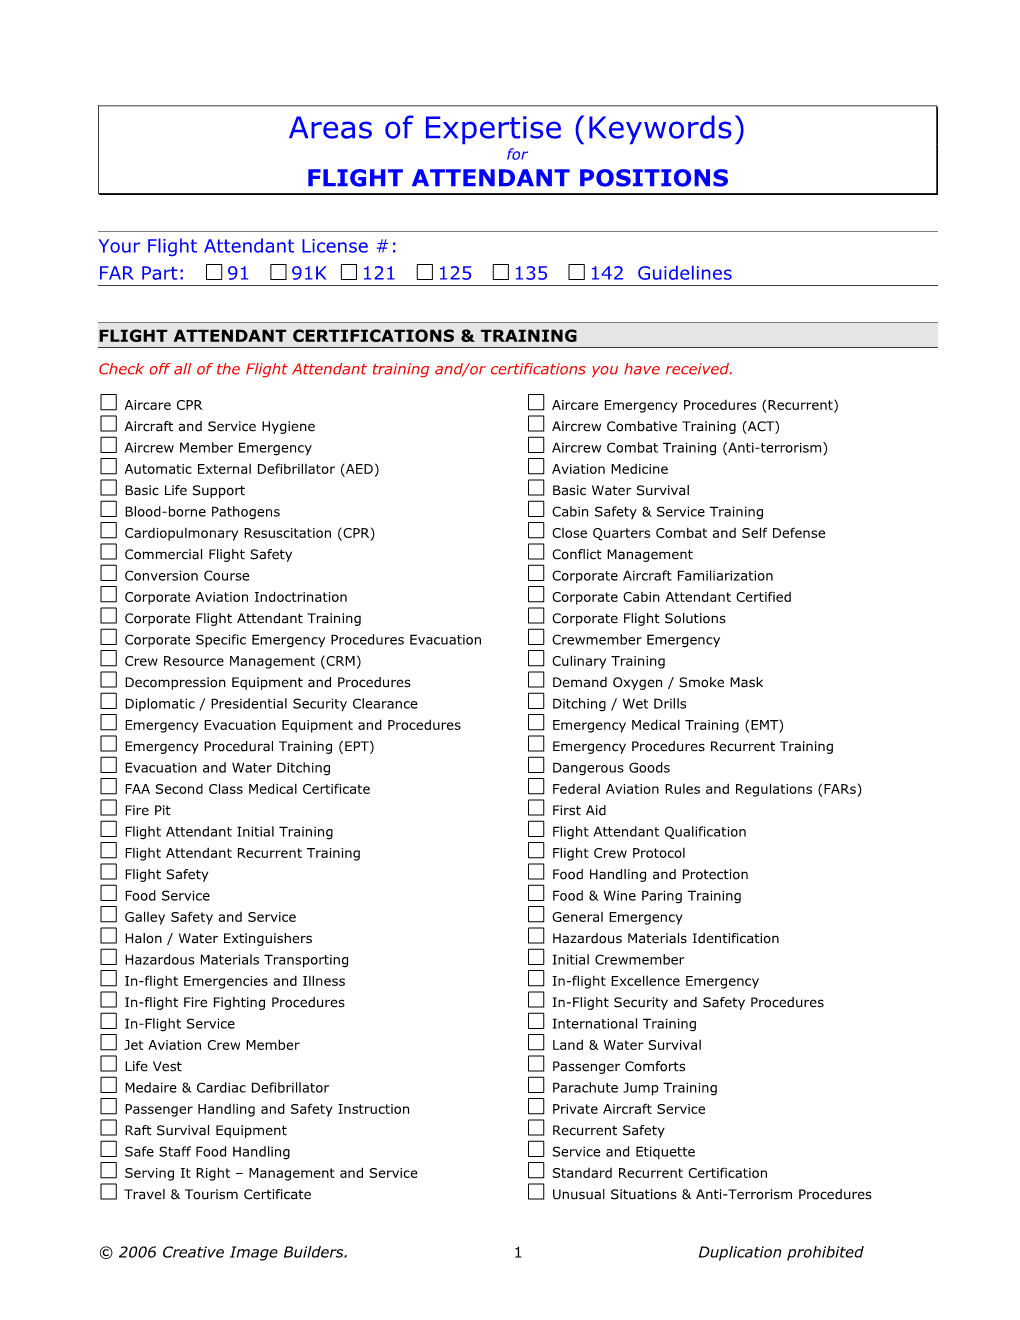 Flight Attendant Certifications & Training